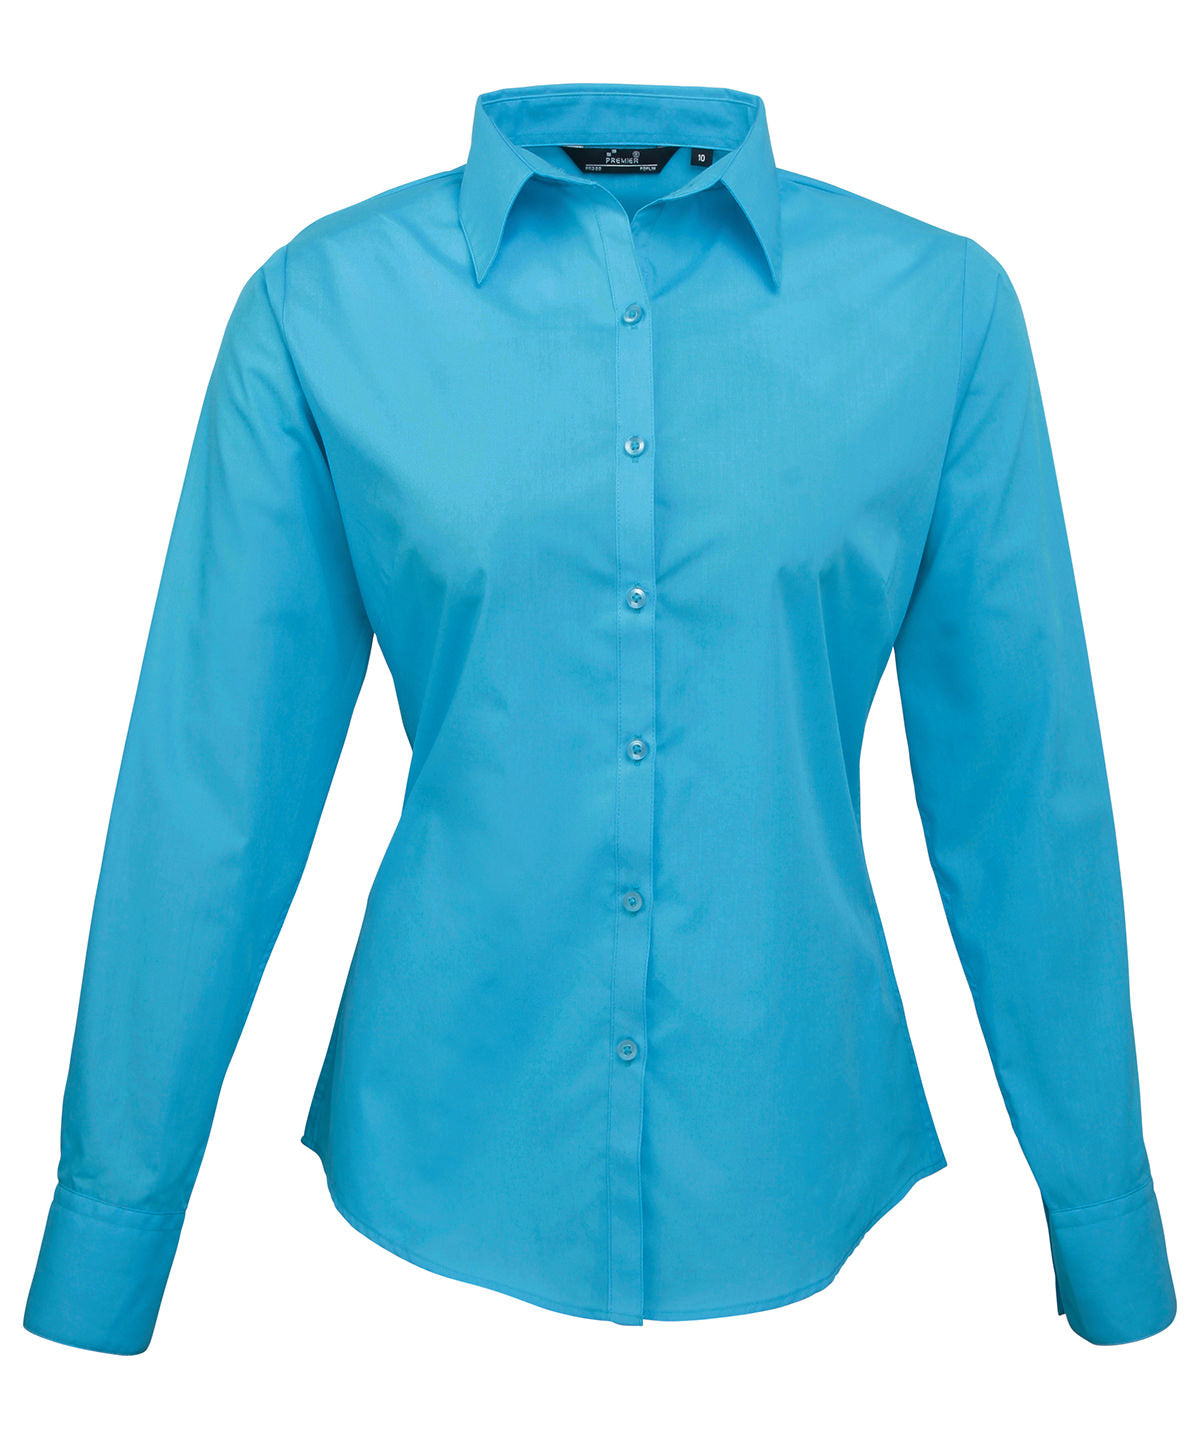 Premier Women's poplin long sleeve blouse Turquoise